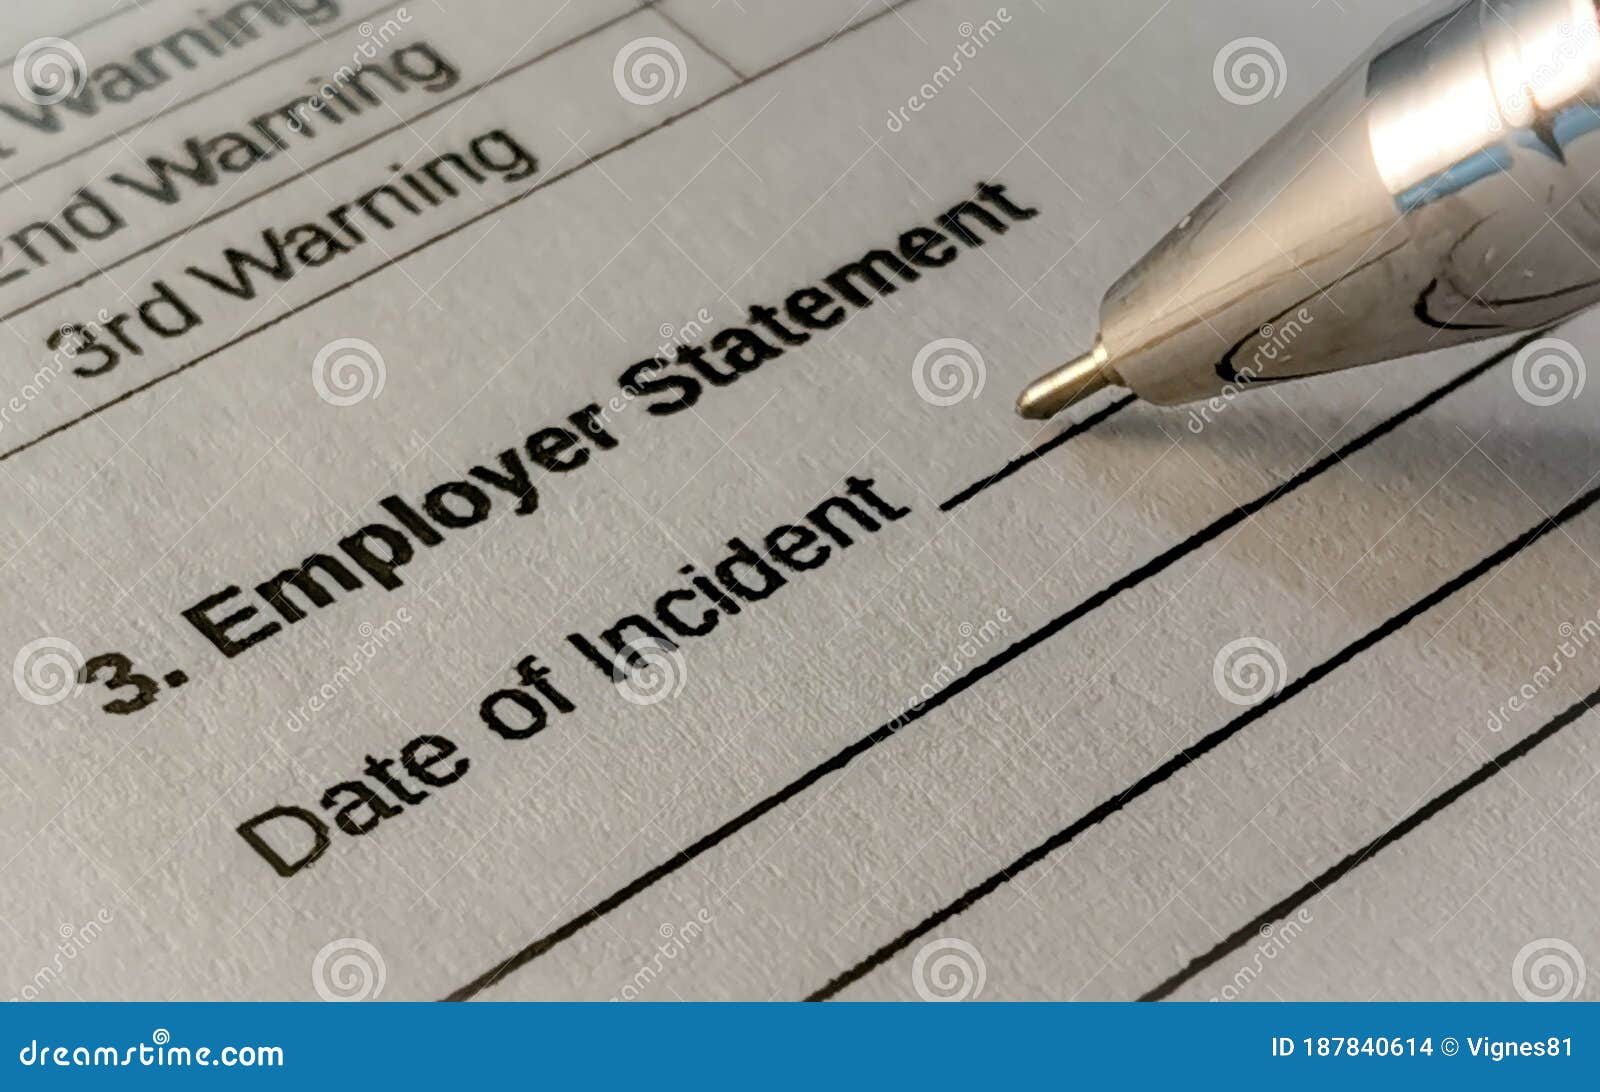 employer statement